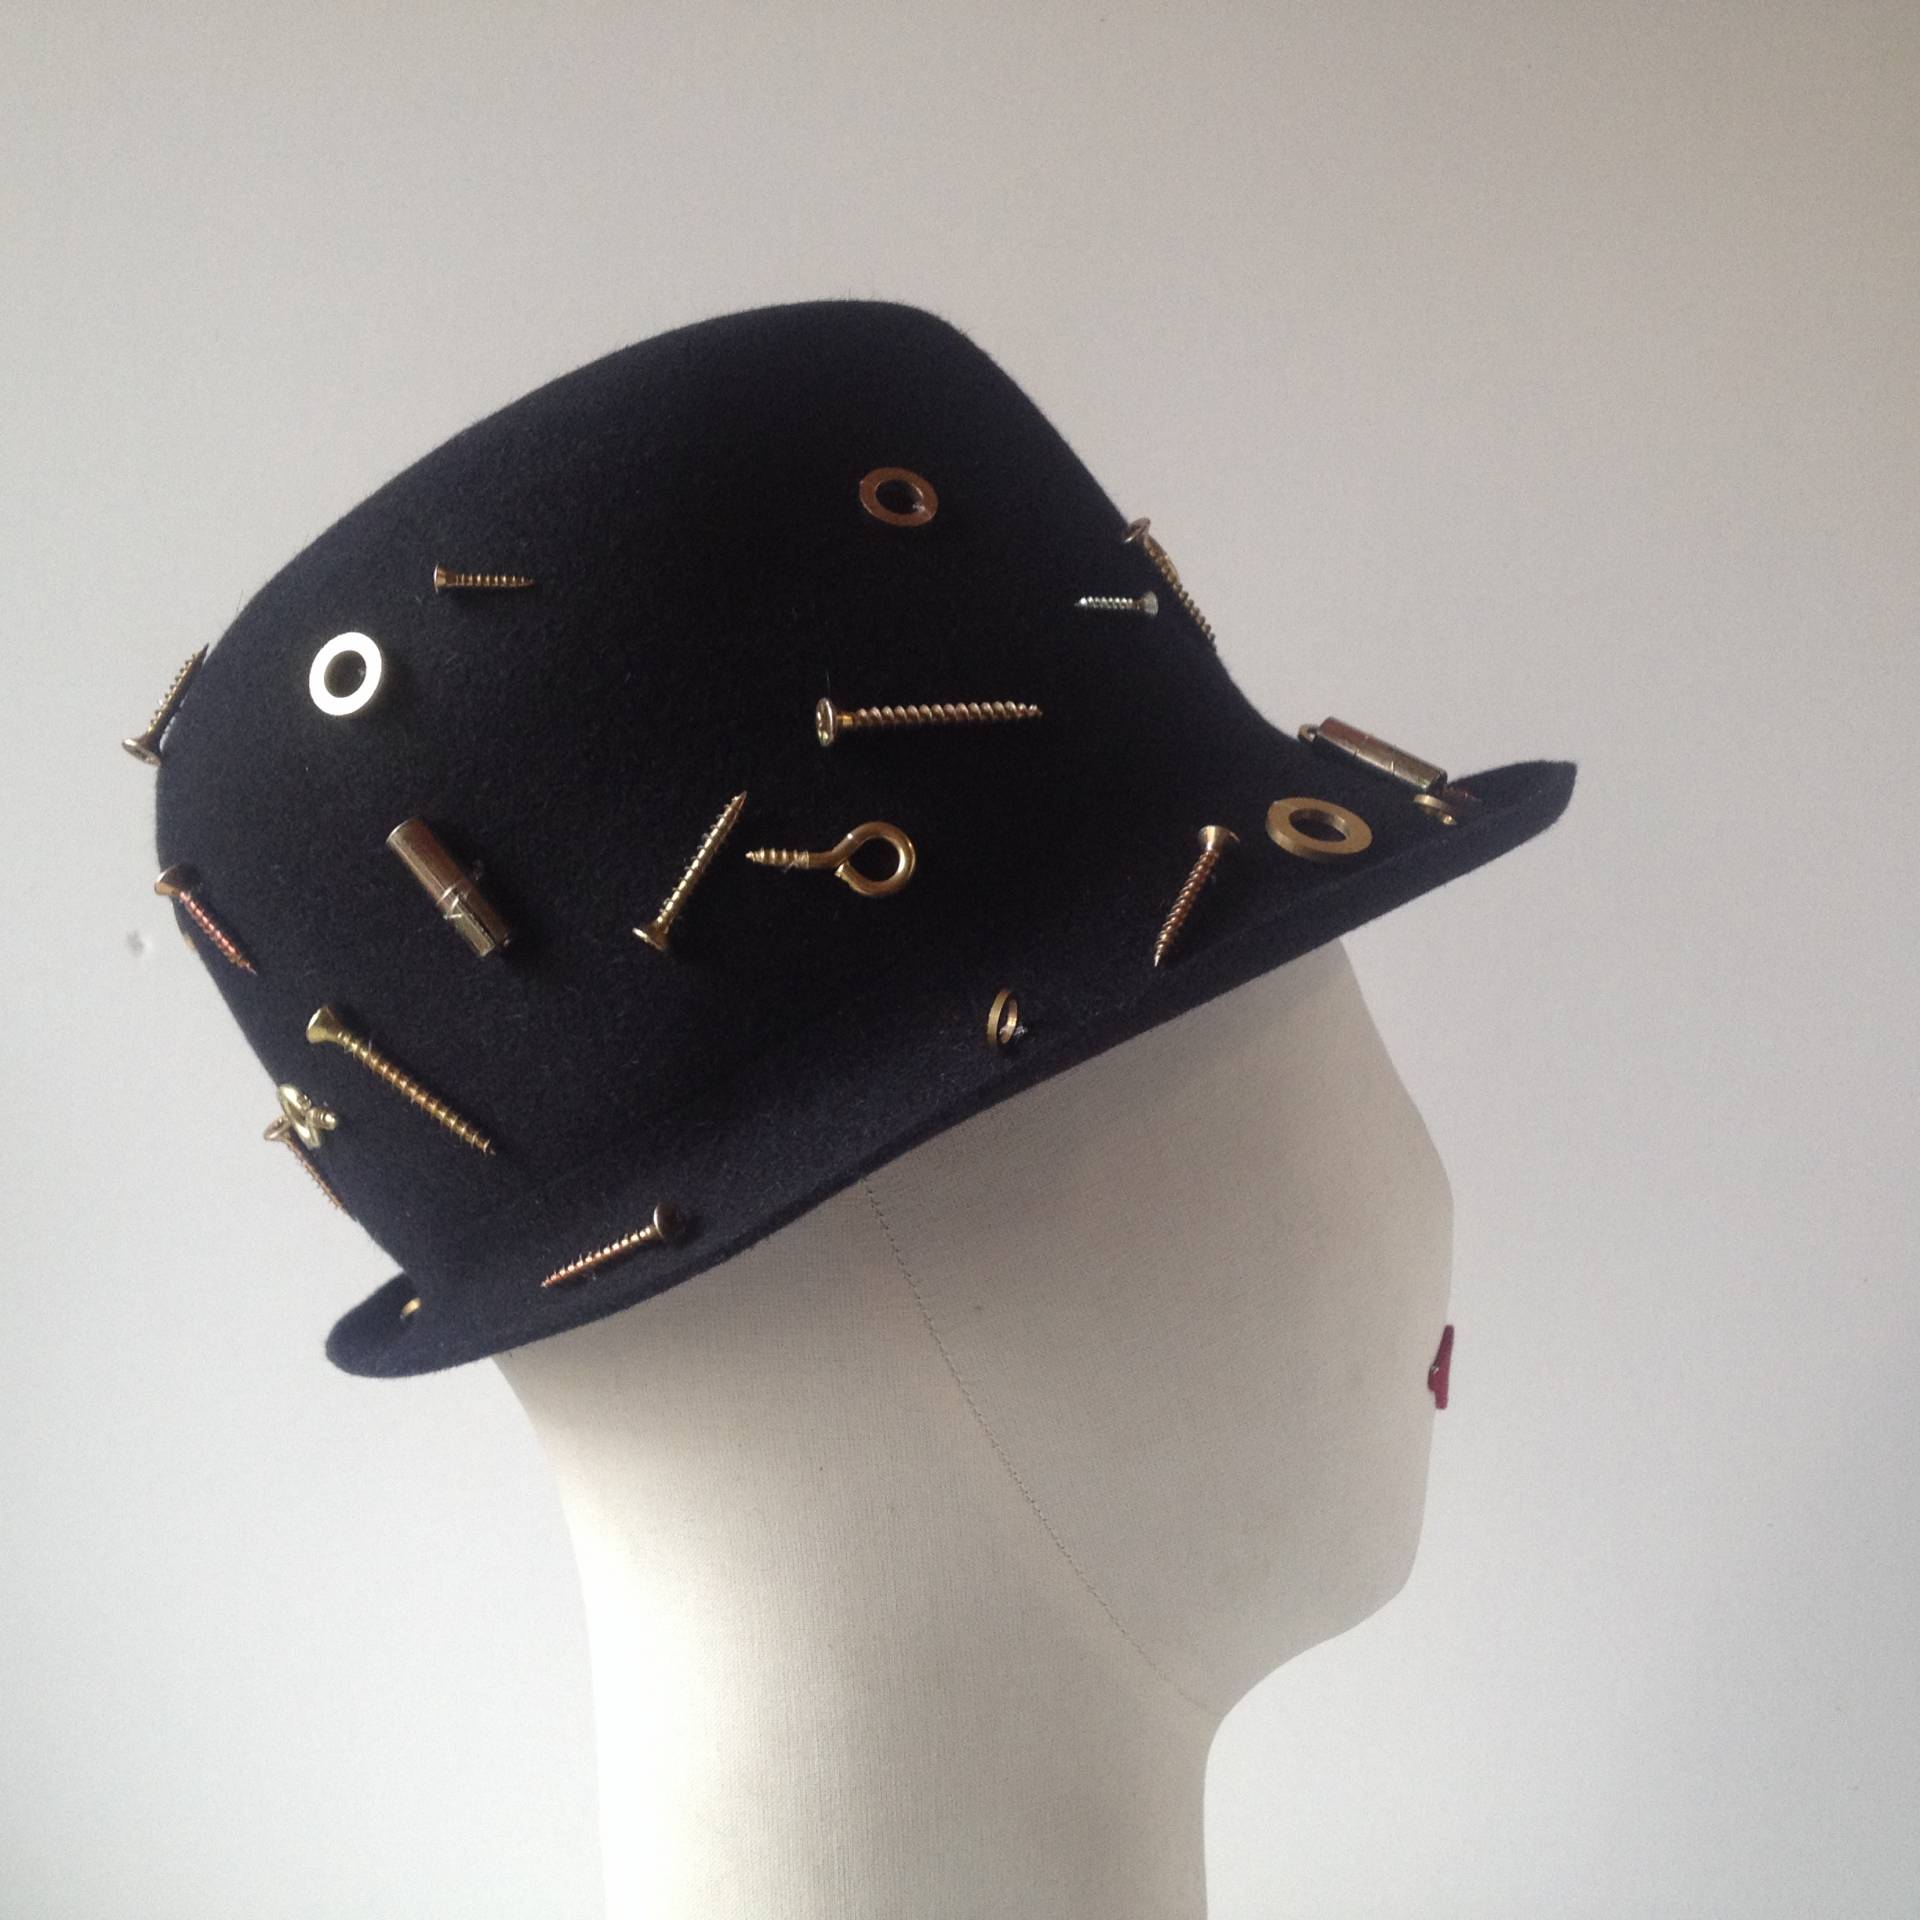 Apliques metálicos en este sombrero de Susana Loureda.